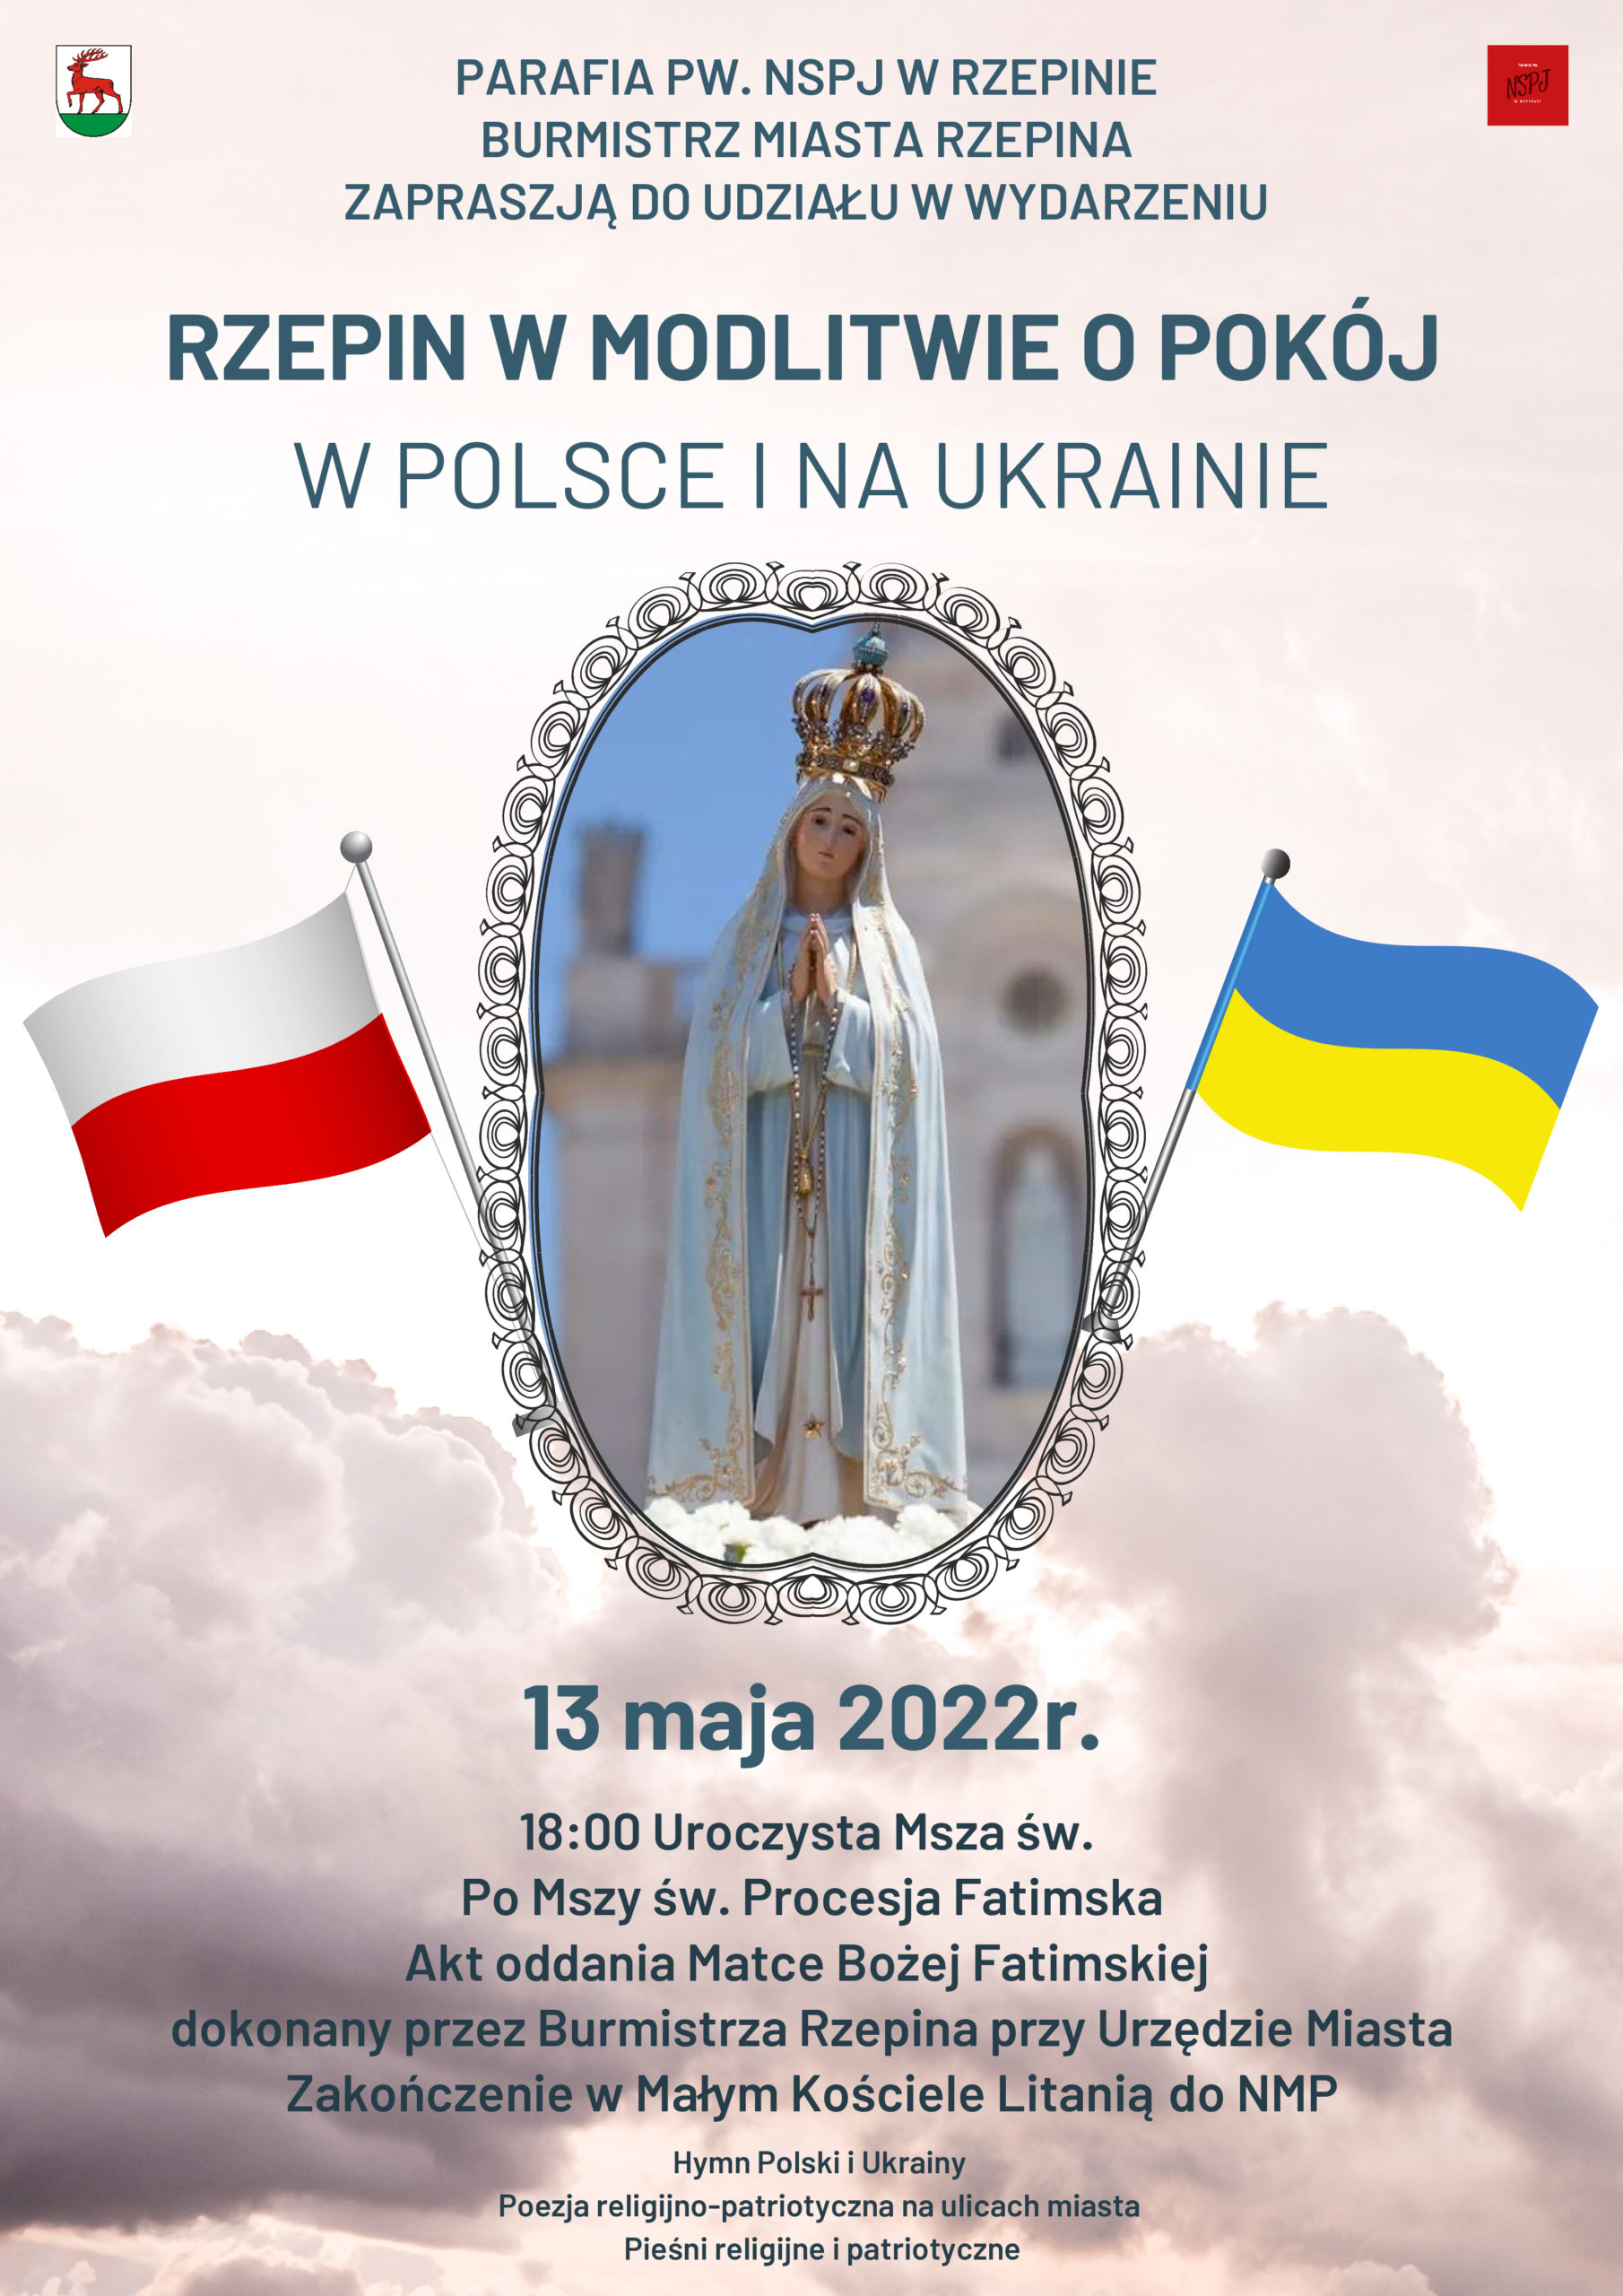 13 maja zapraszamy do modlitwy o pokój w polsce i na Ukrainie